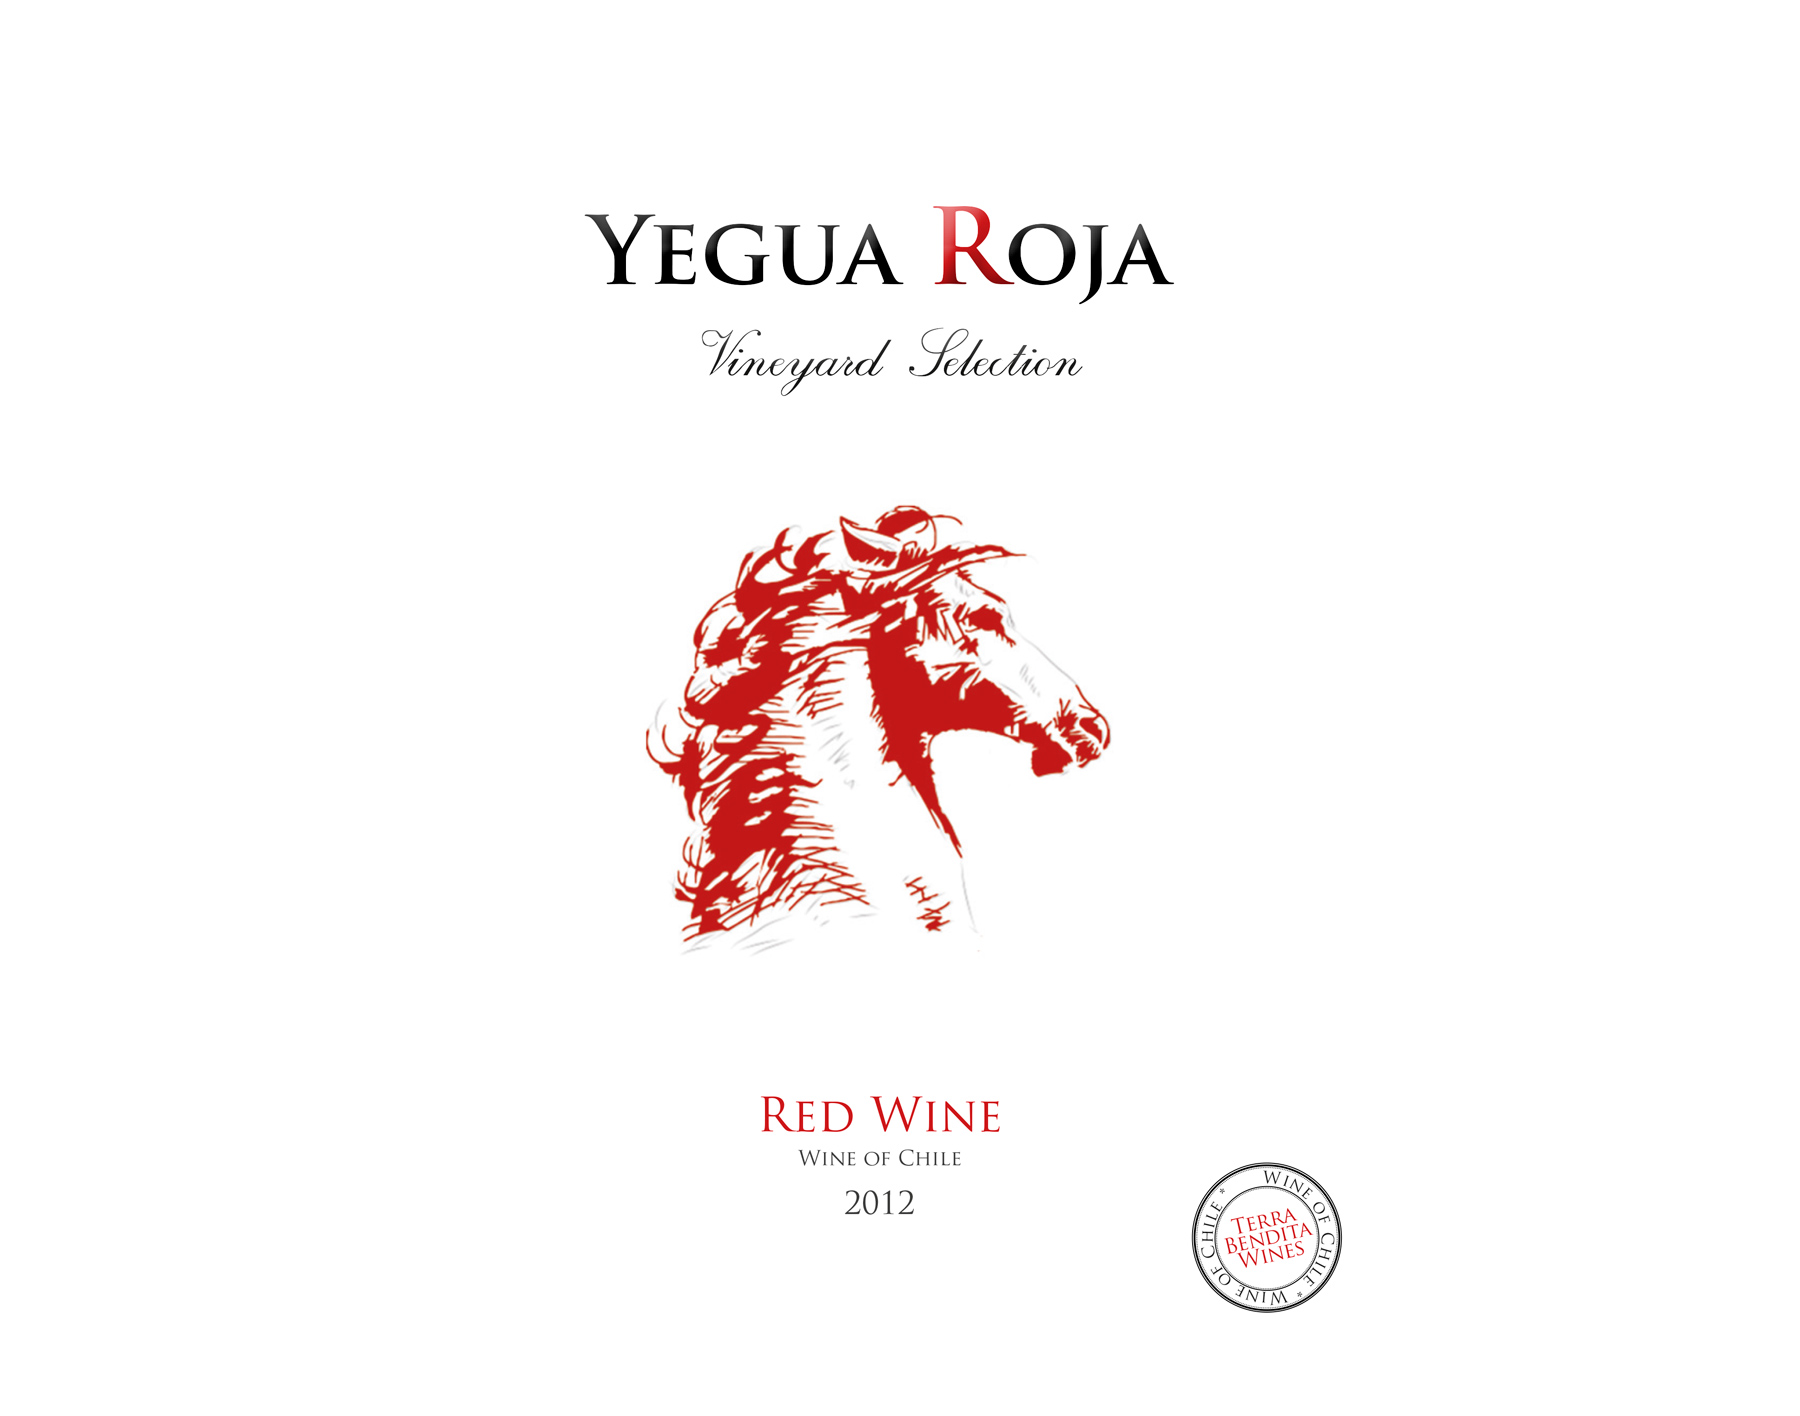 Diseño gráfico y creativo de etiquetas y packaging de vino para bodegas YEGUA ROJA de Chile, consumo propio y exportación